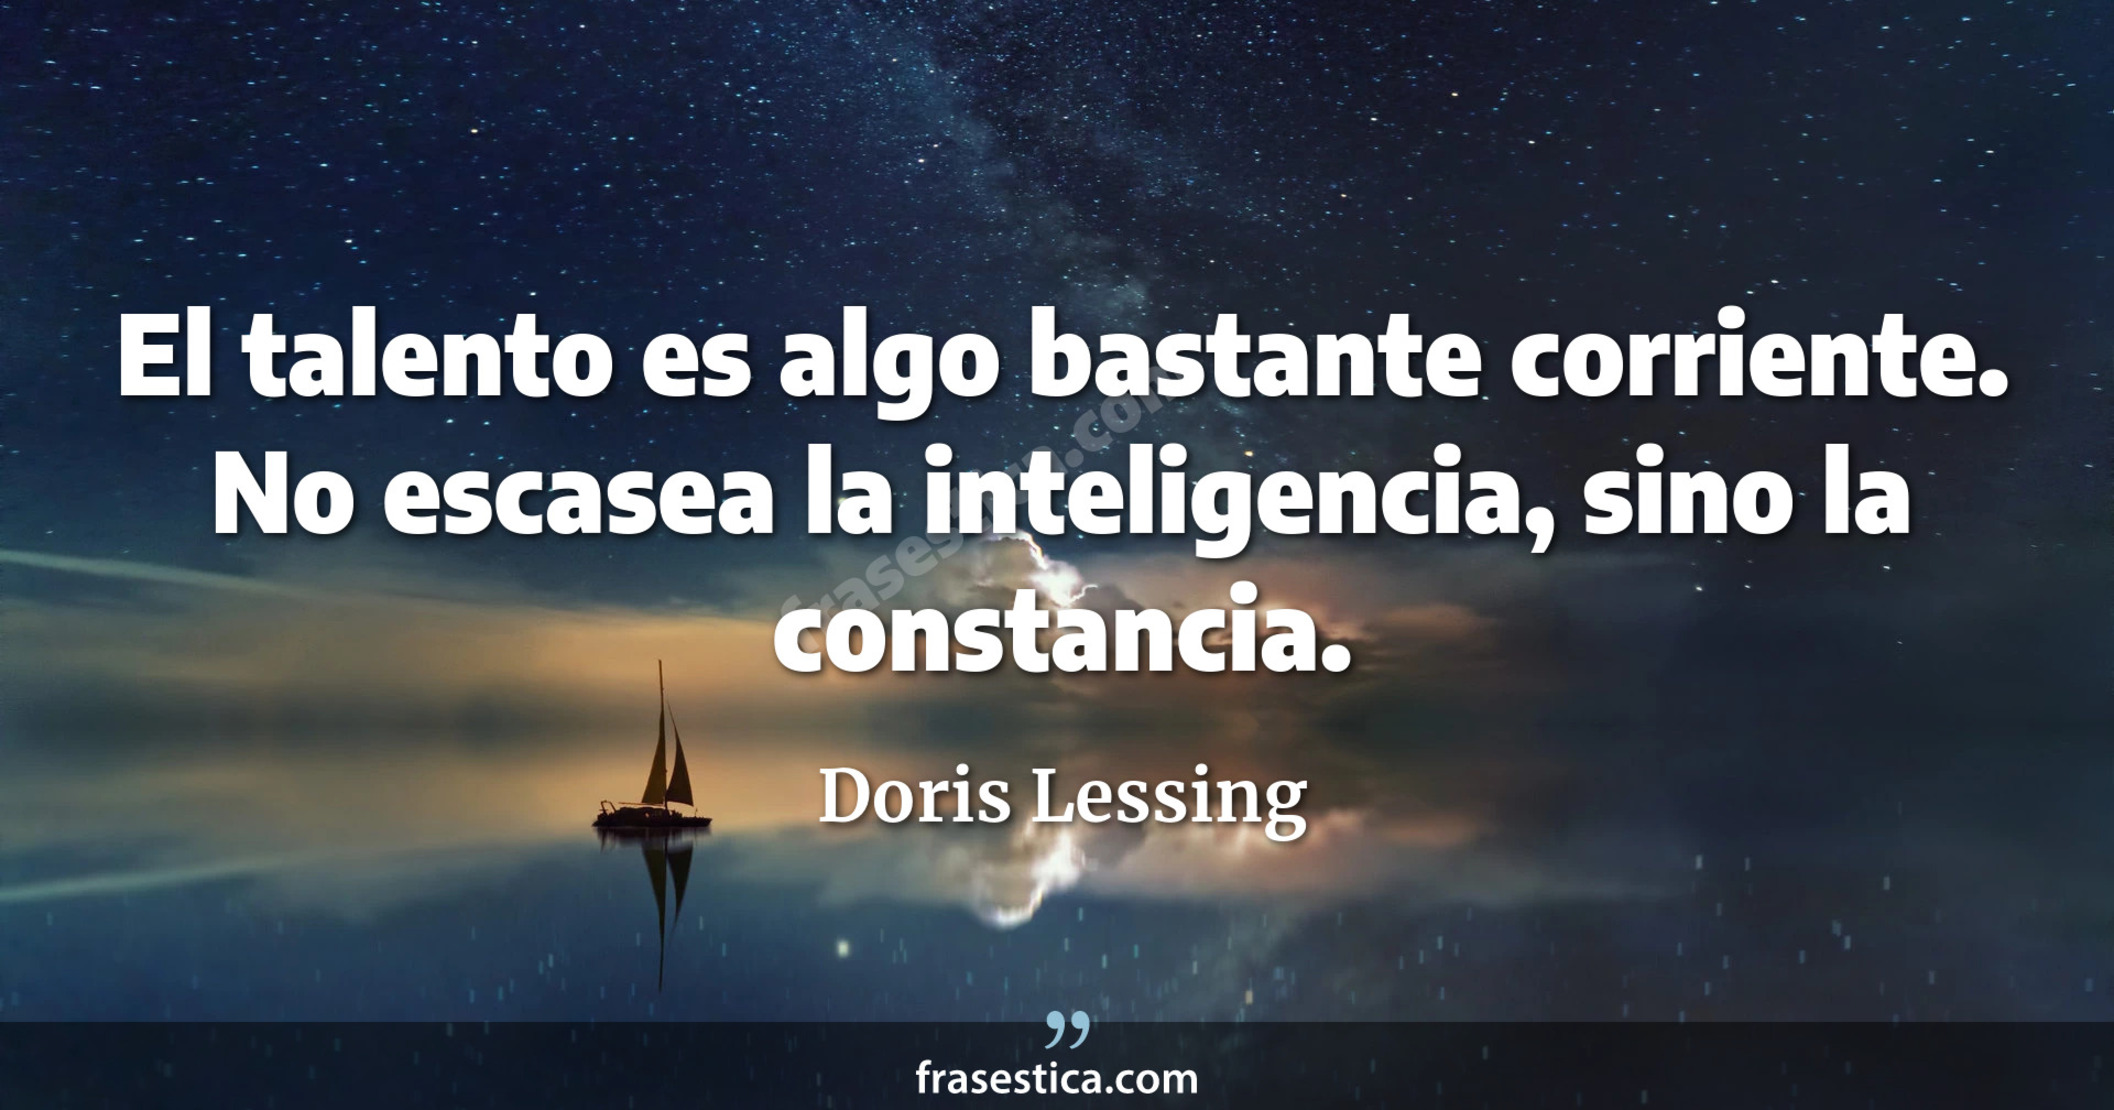 El talento es algo bastante corriente. No escasea la inteligencia, sino la constancia. - Doris Lessing